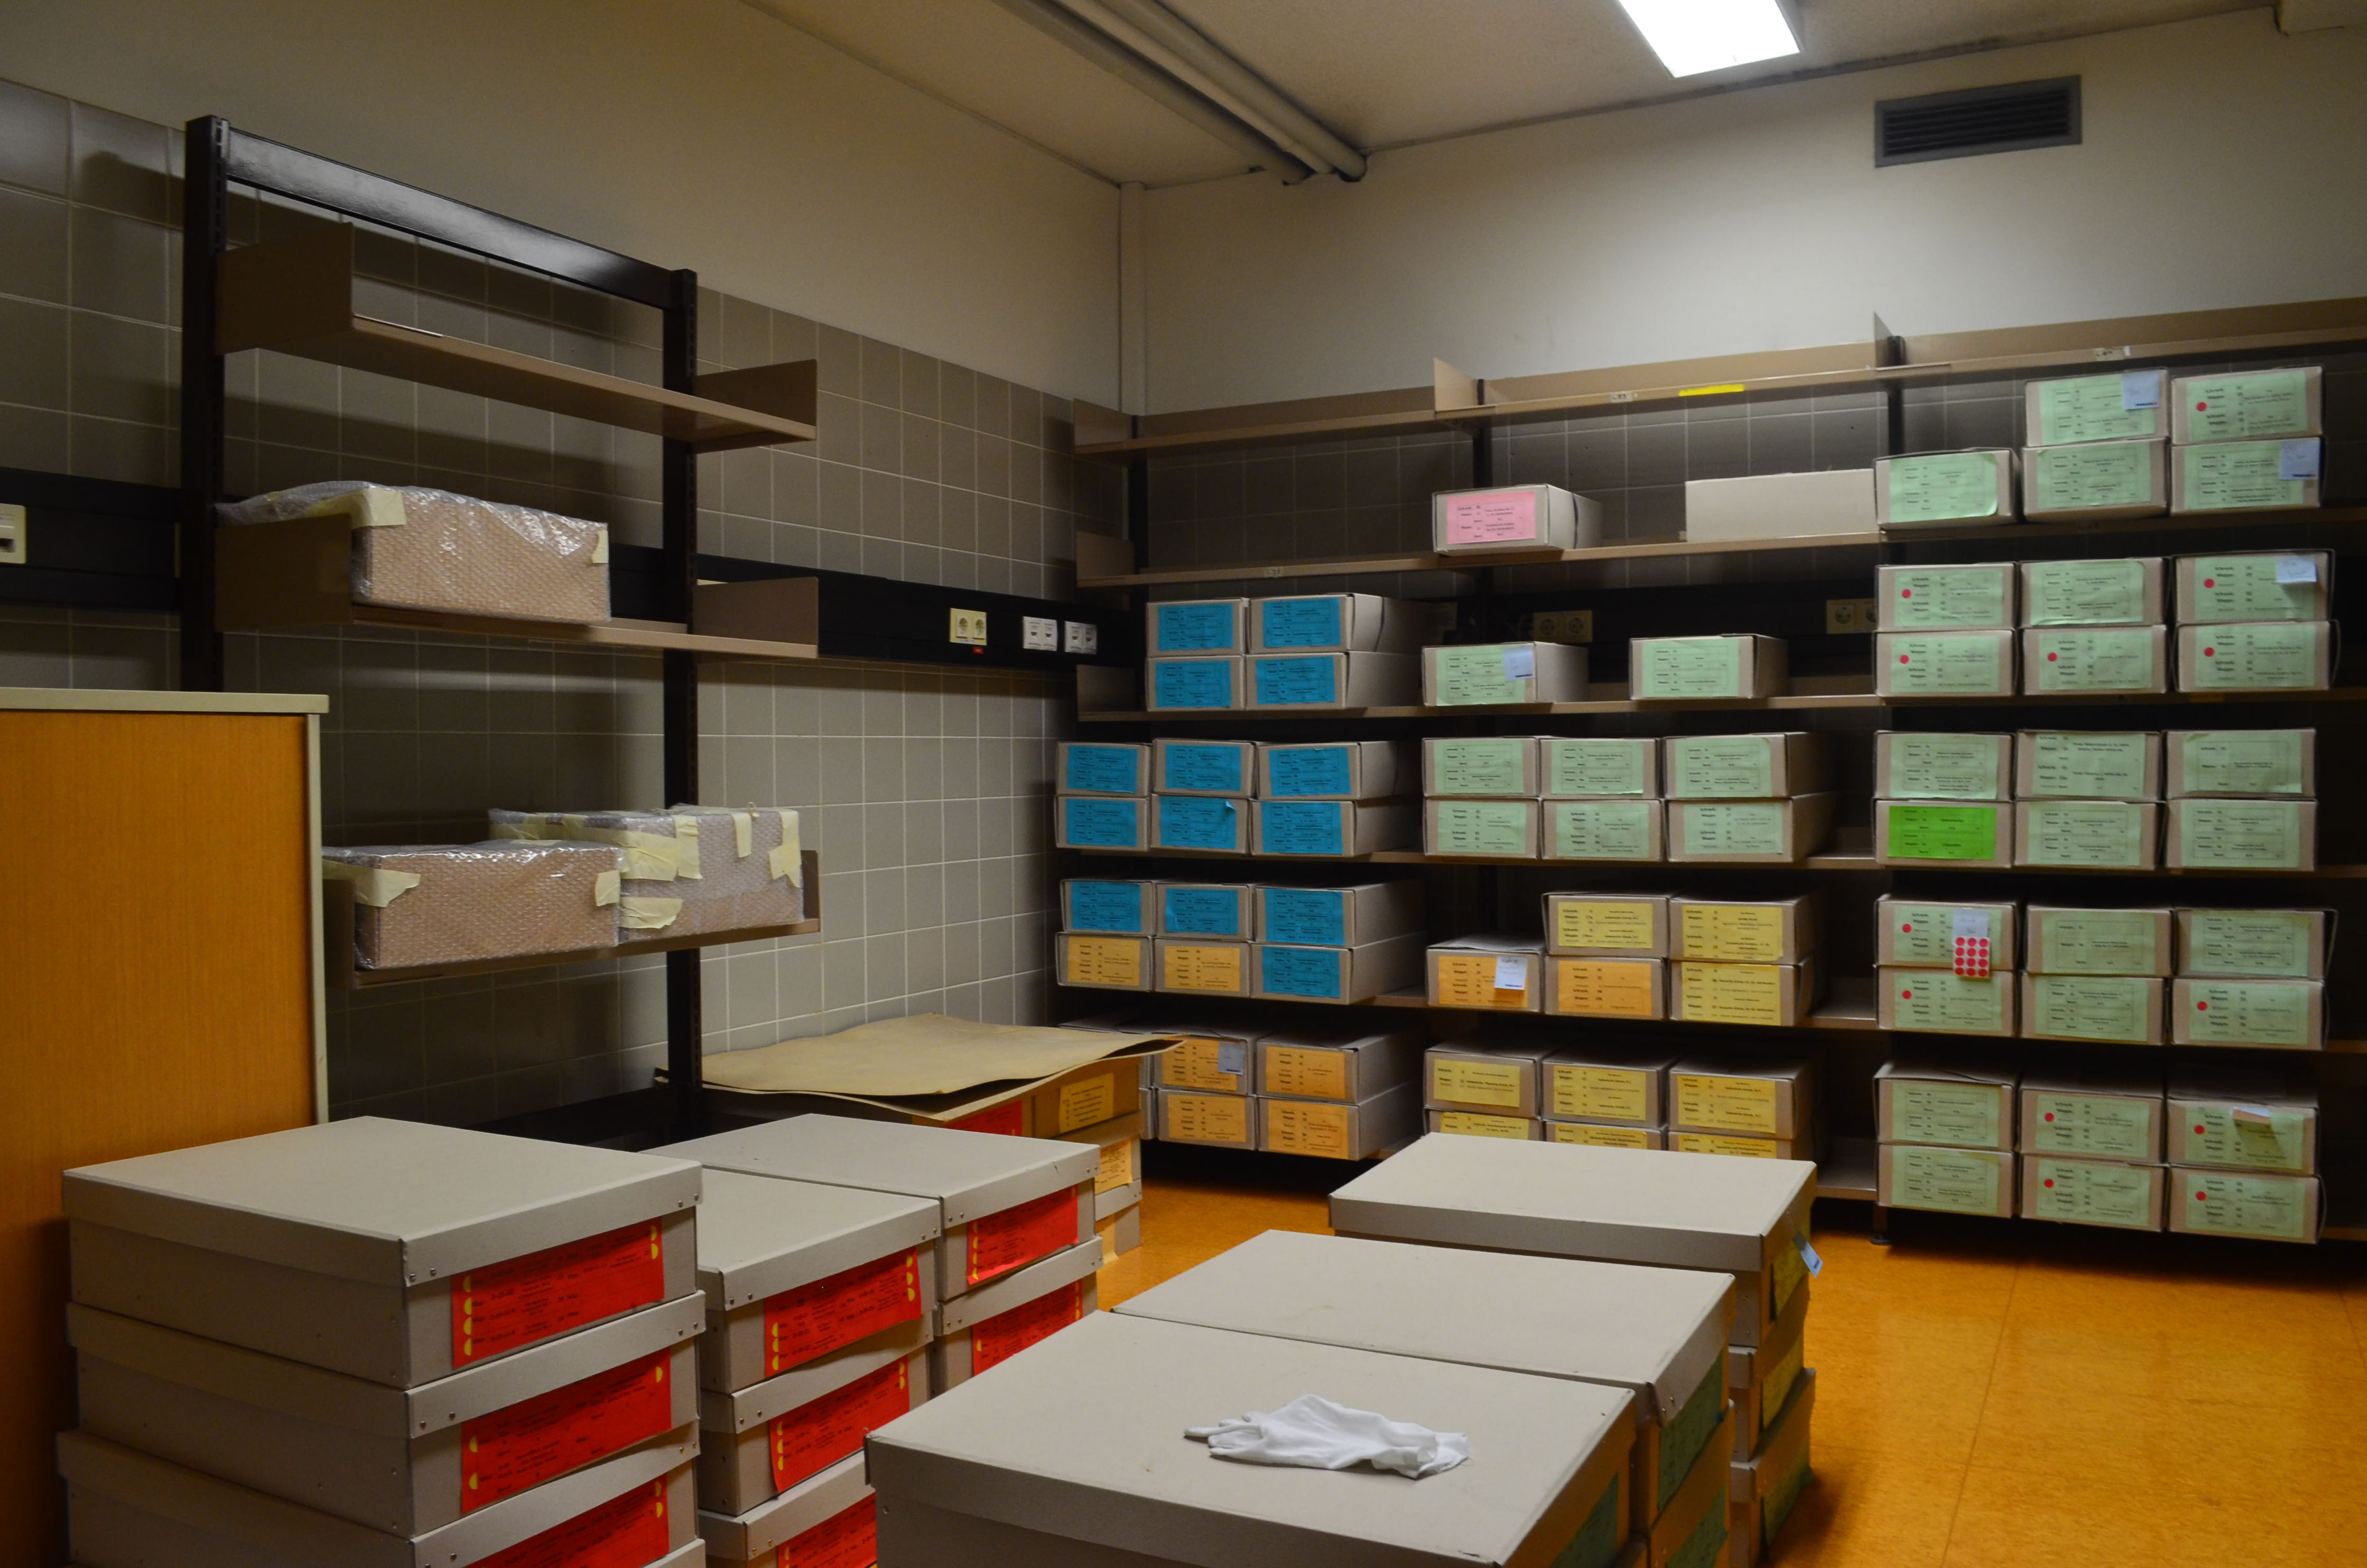 Historische Lehrmittelsammlung des Instituts für Kunstgeschichte, Universität Innsbruck, Blick in den Archivraum